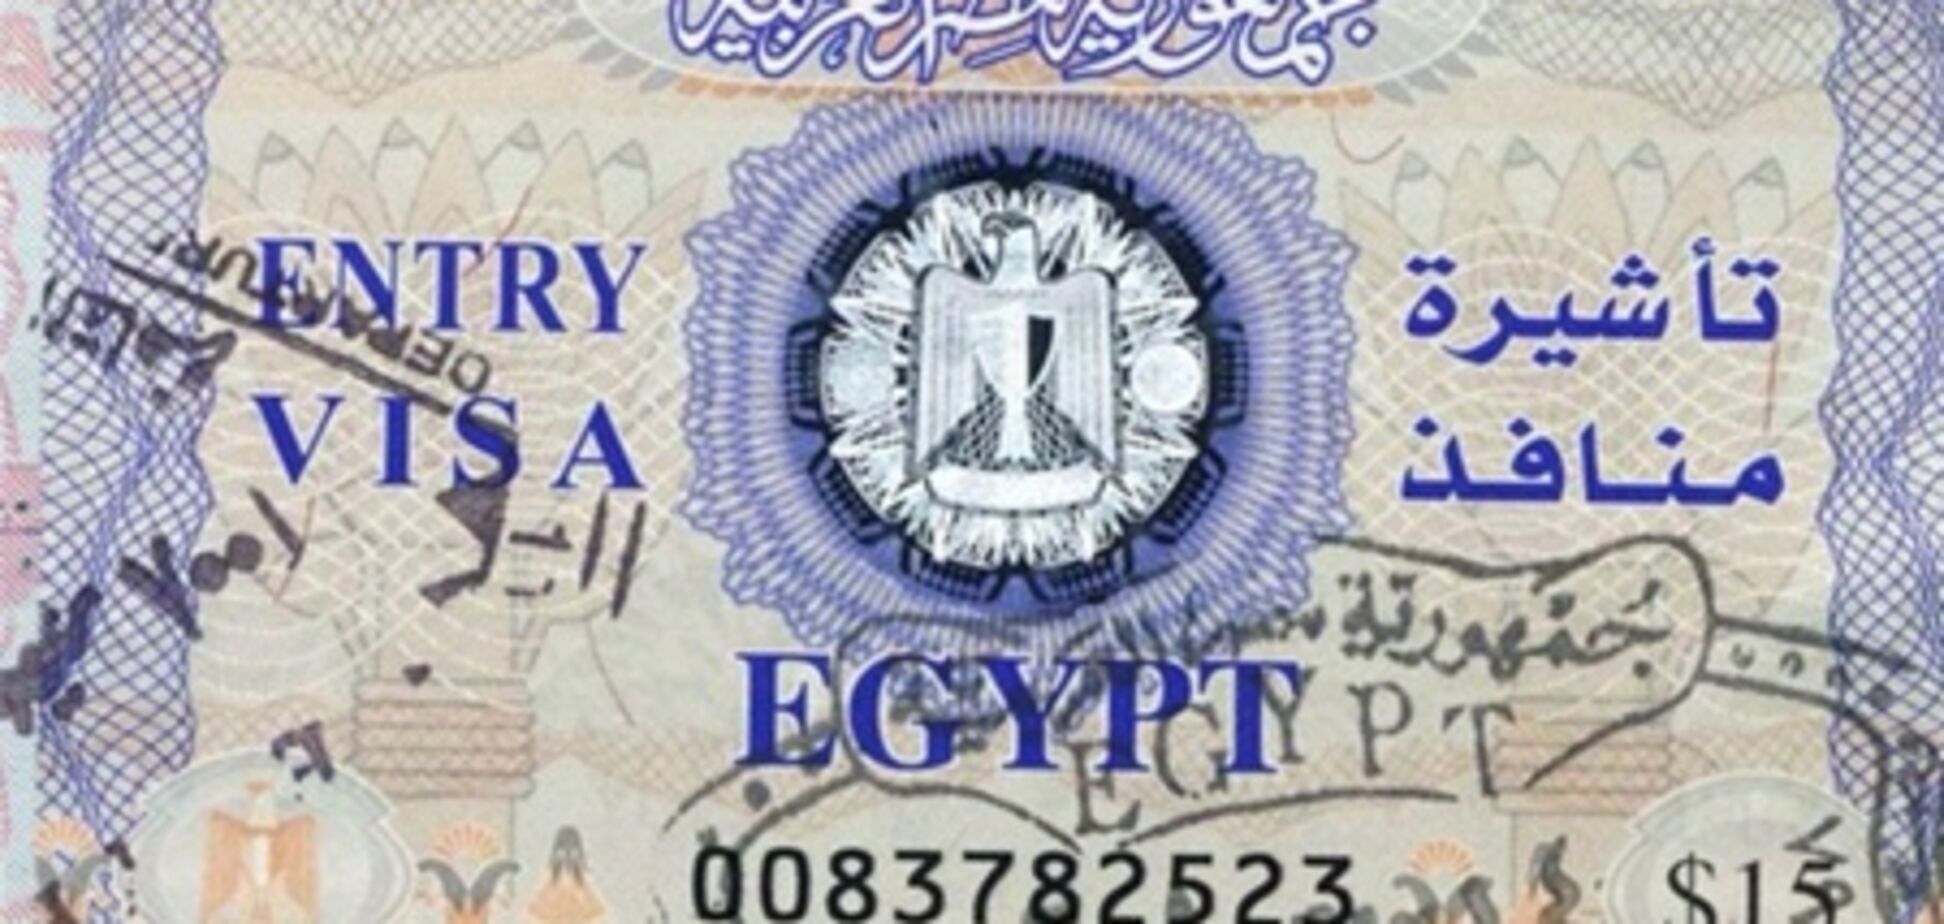 У Єгипті заборонили видавати візи в аеропорту 